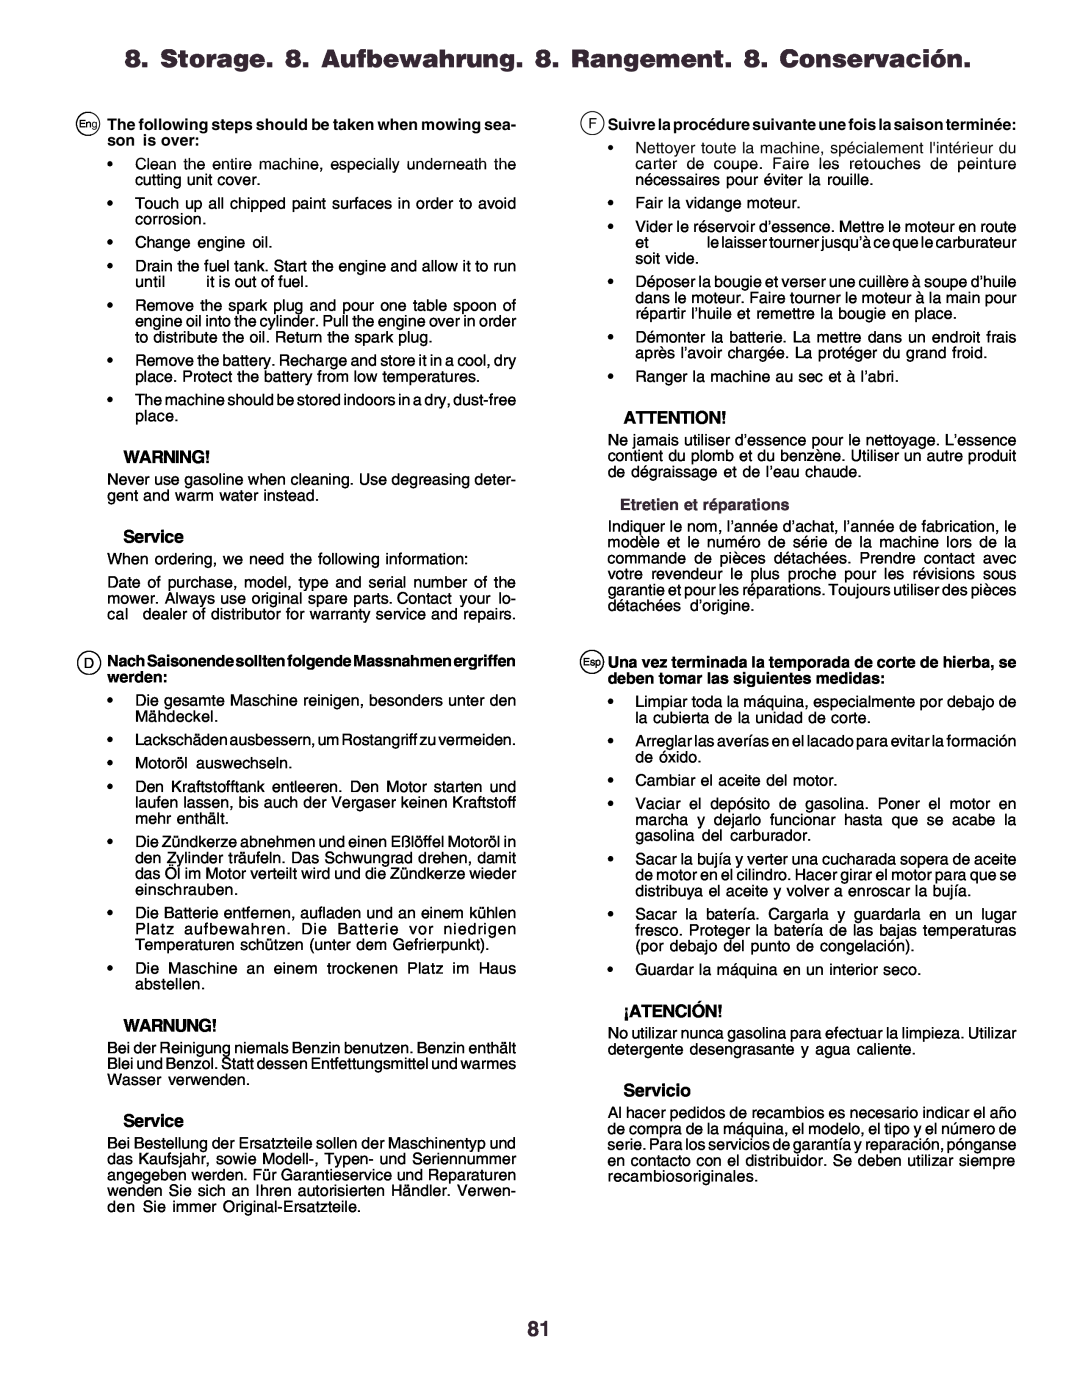 Husqvarna CT160 instruction manual Service, Warnung, ¡Atención, Servicio, Etretien et réparations 